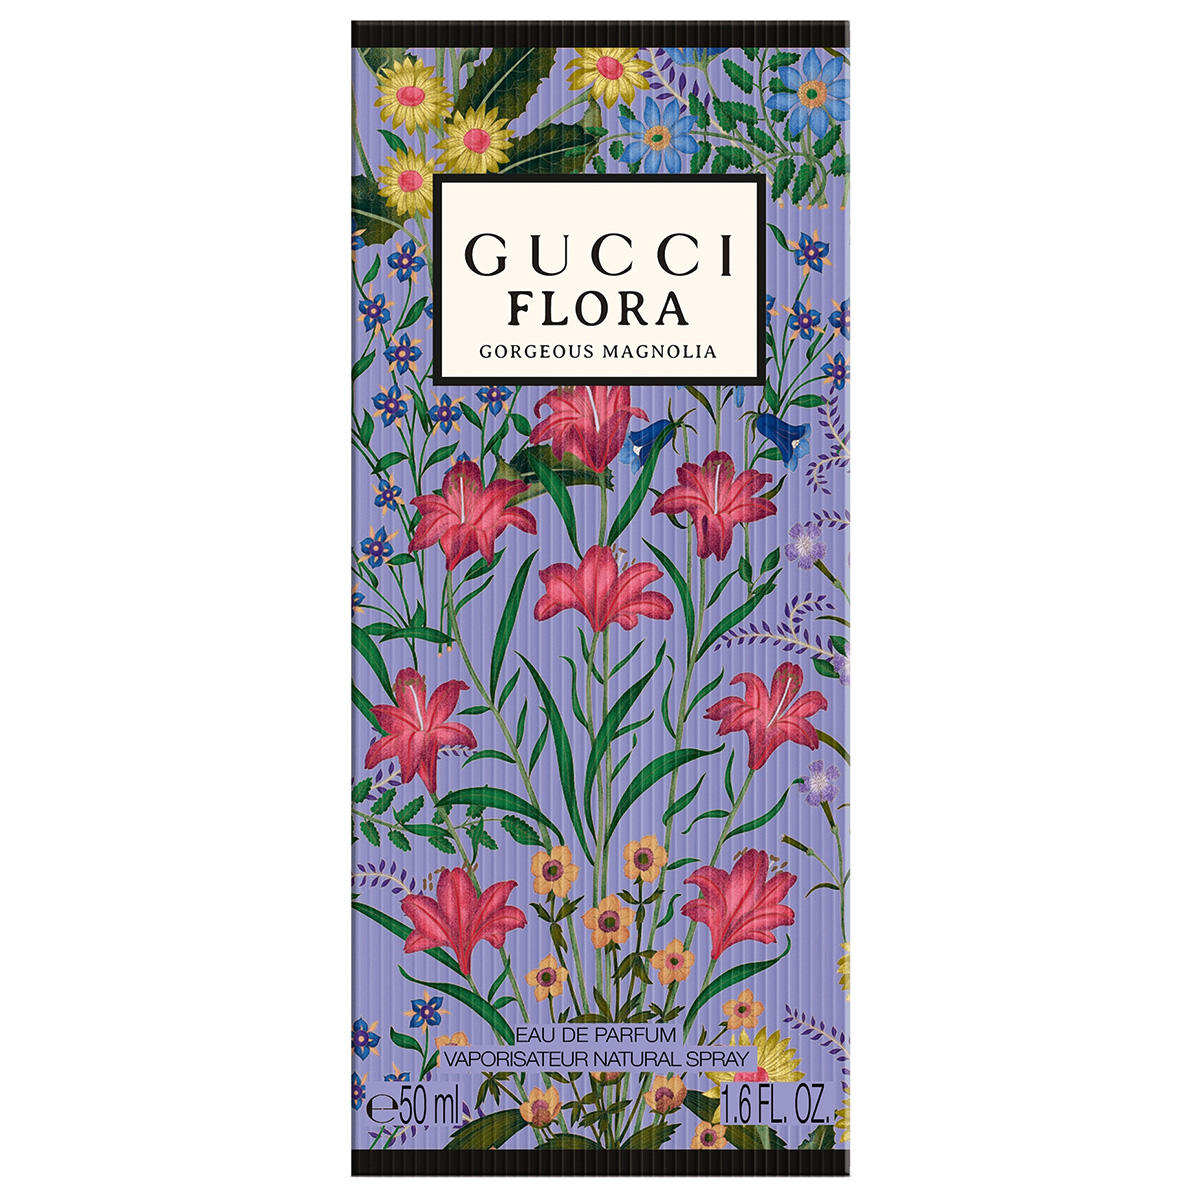 Gucci Flora Gorgeous Magnolia Eau de Parfum 50 ml - 3